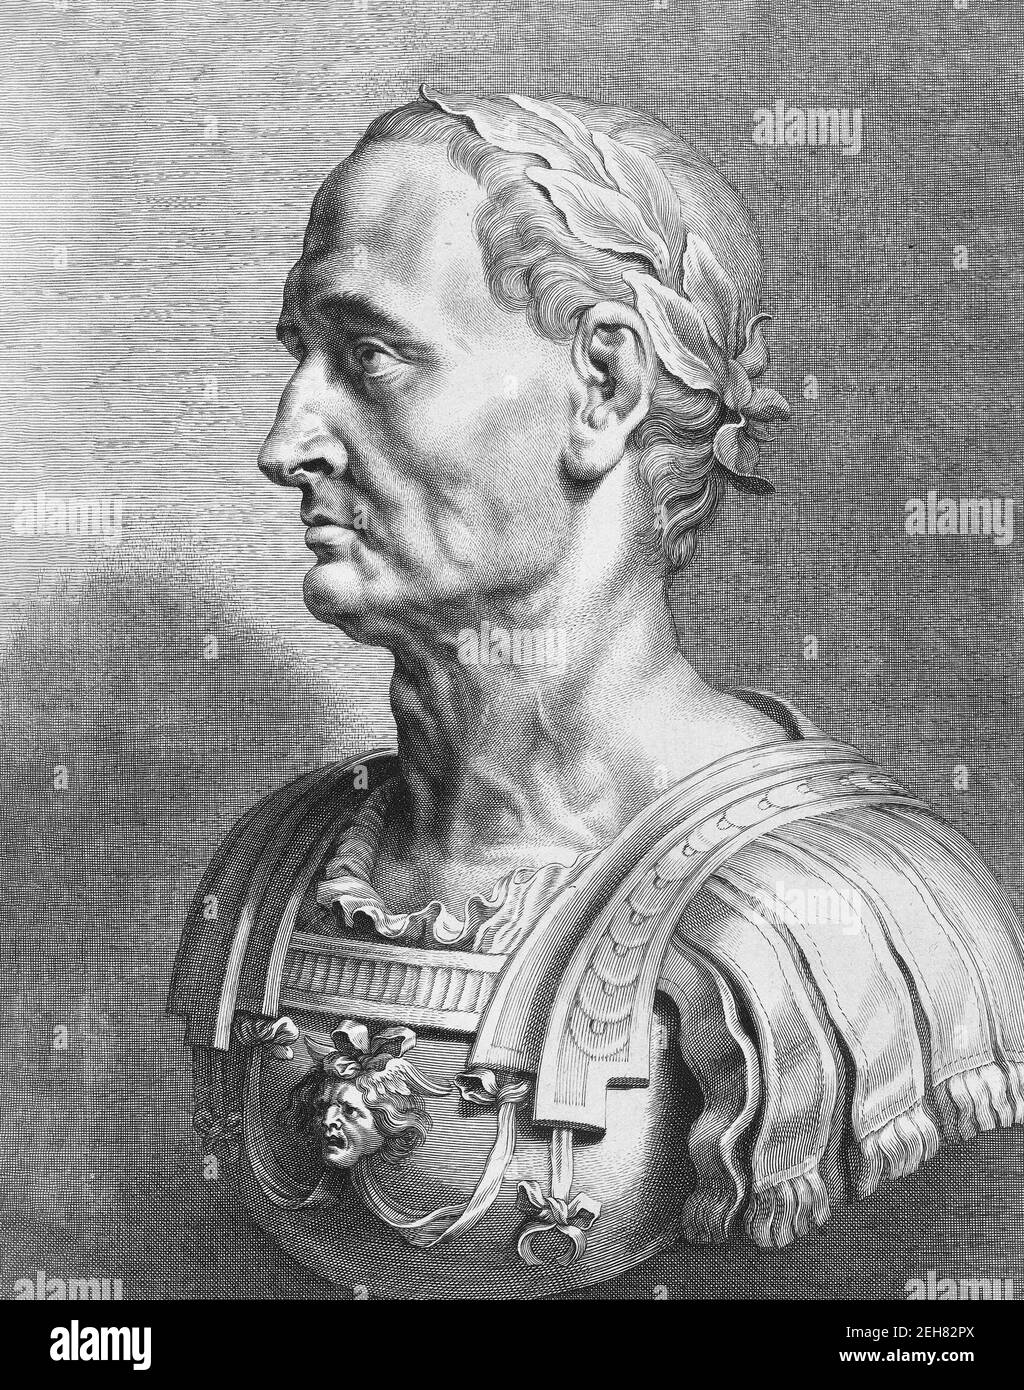 Jules César. Portrait du dictateur romain, Jules César (100 av. J.-C. - 44 av. J.-C.), gravure du XVIIe siècle d'un buste en marbre Banque D'Images